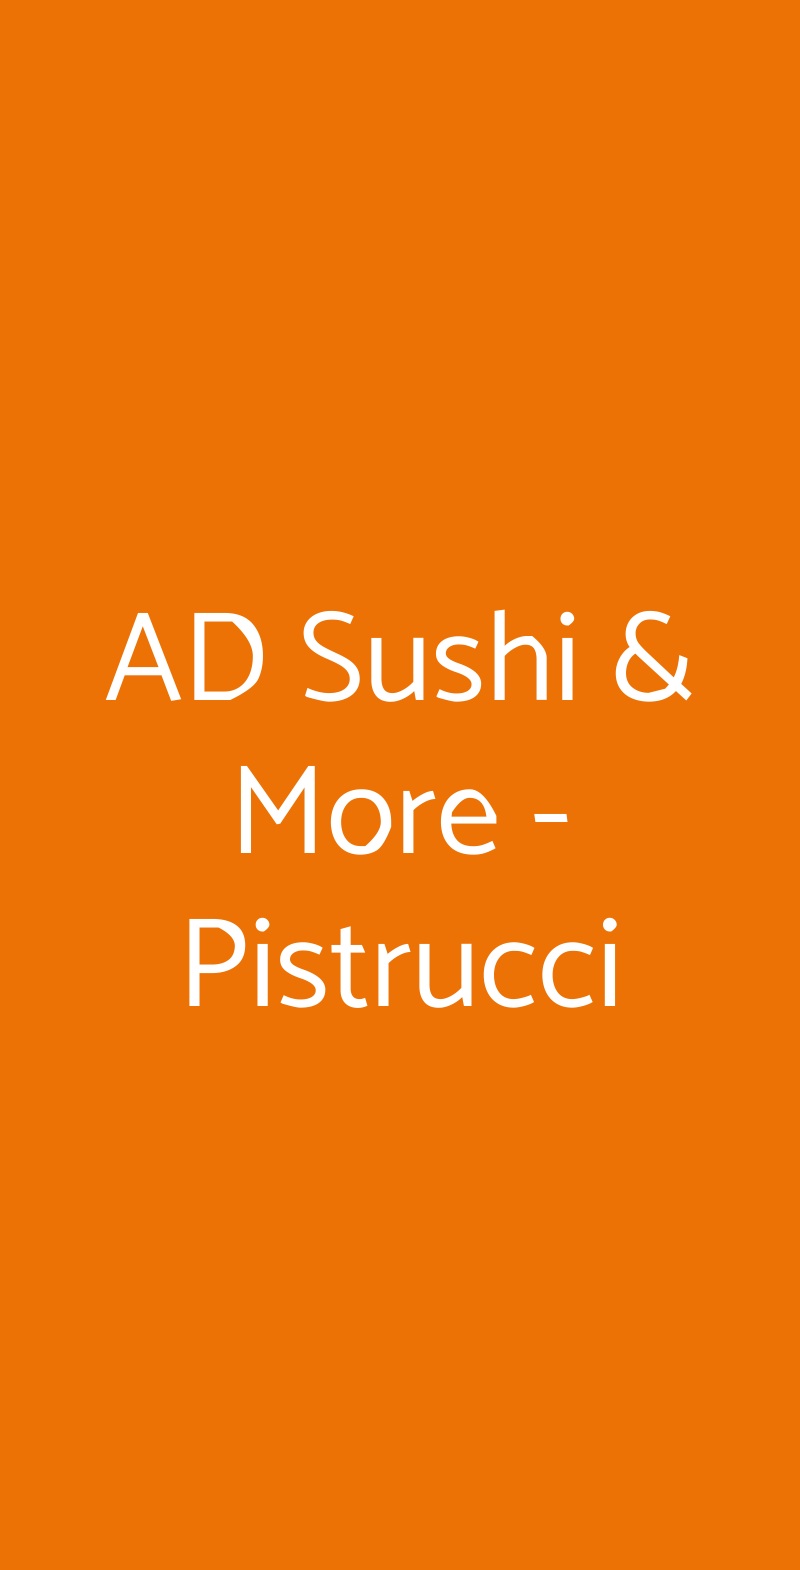 AD Sushi & More - Pistrucci Milano menù 1 pagina